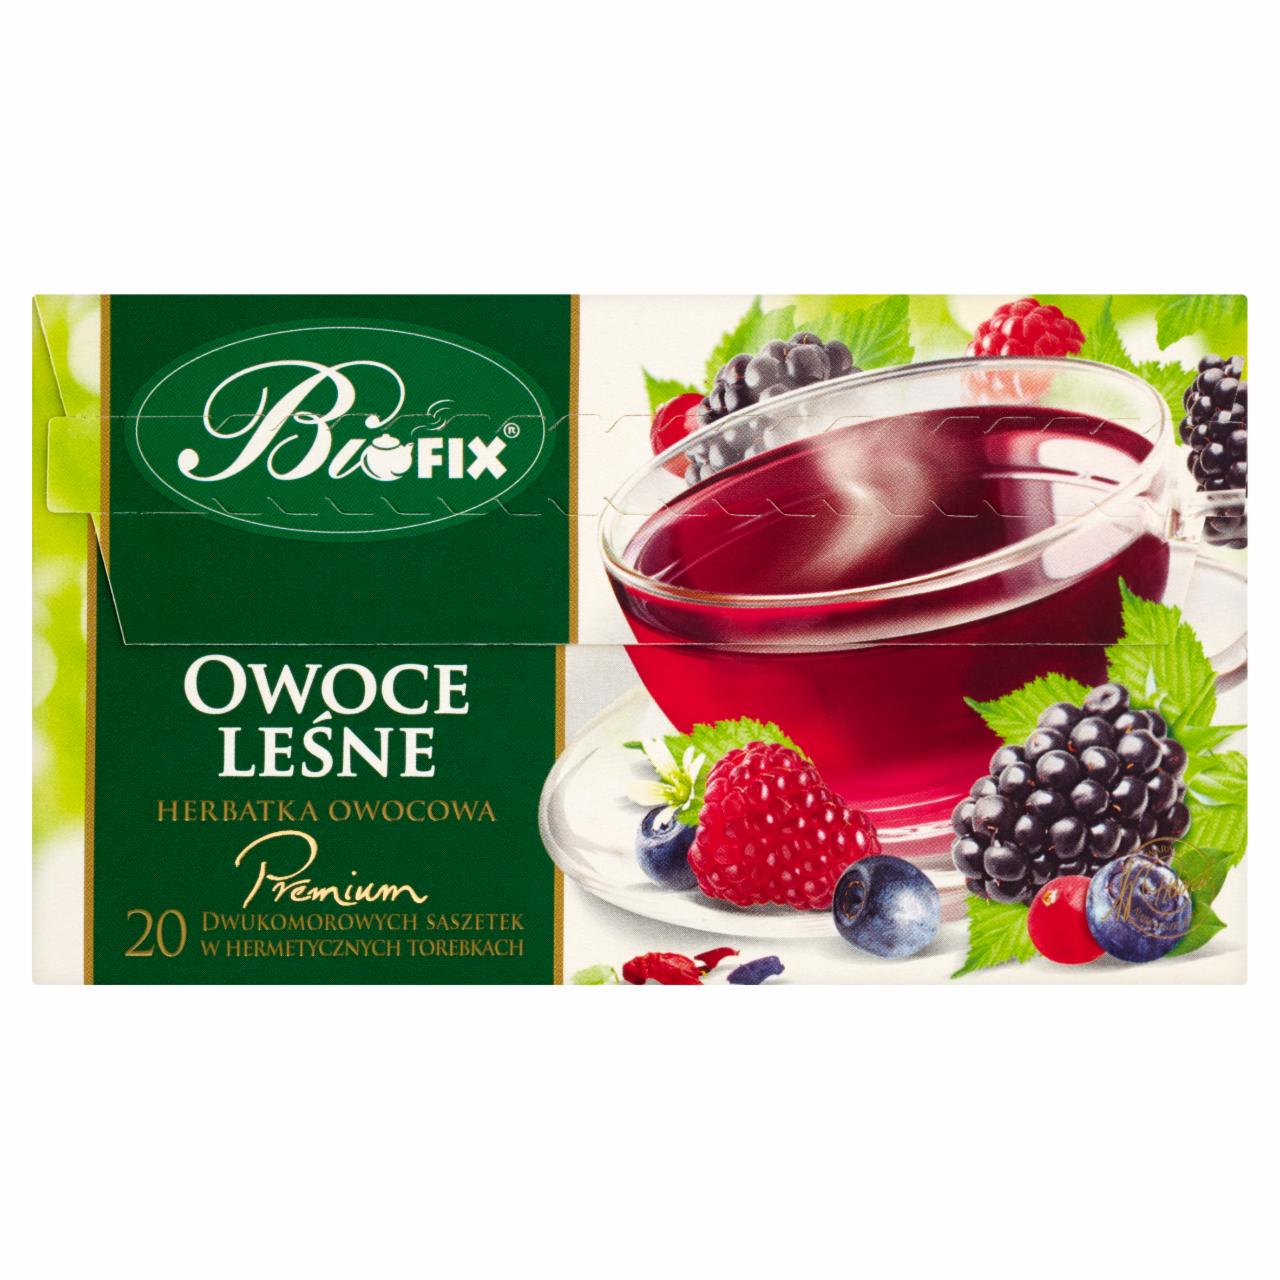 Zdjęcia - Bifix Premium owoce leśne Herbatka owocowa 40 g (20 saszetek)